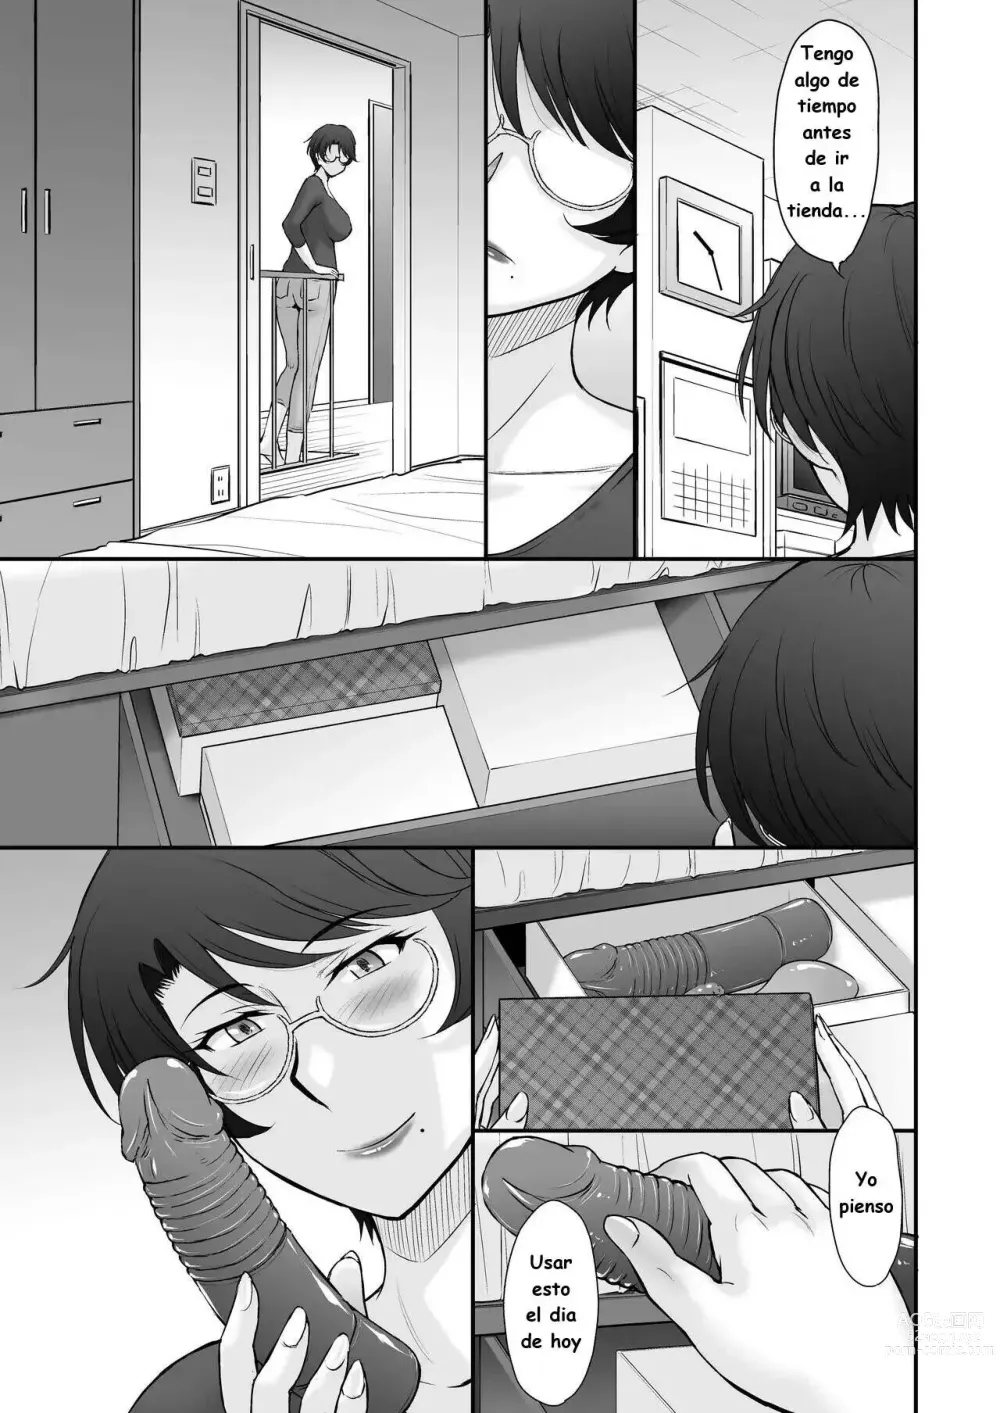 Page 4 of manga Mensajeria de vecina fue entregado en mi casa por error